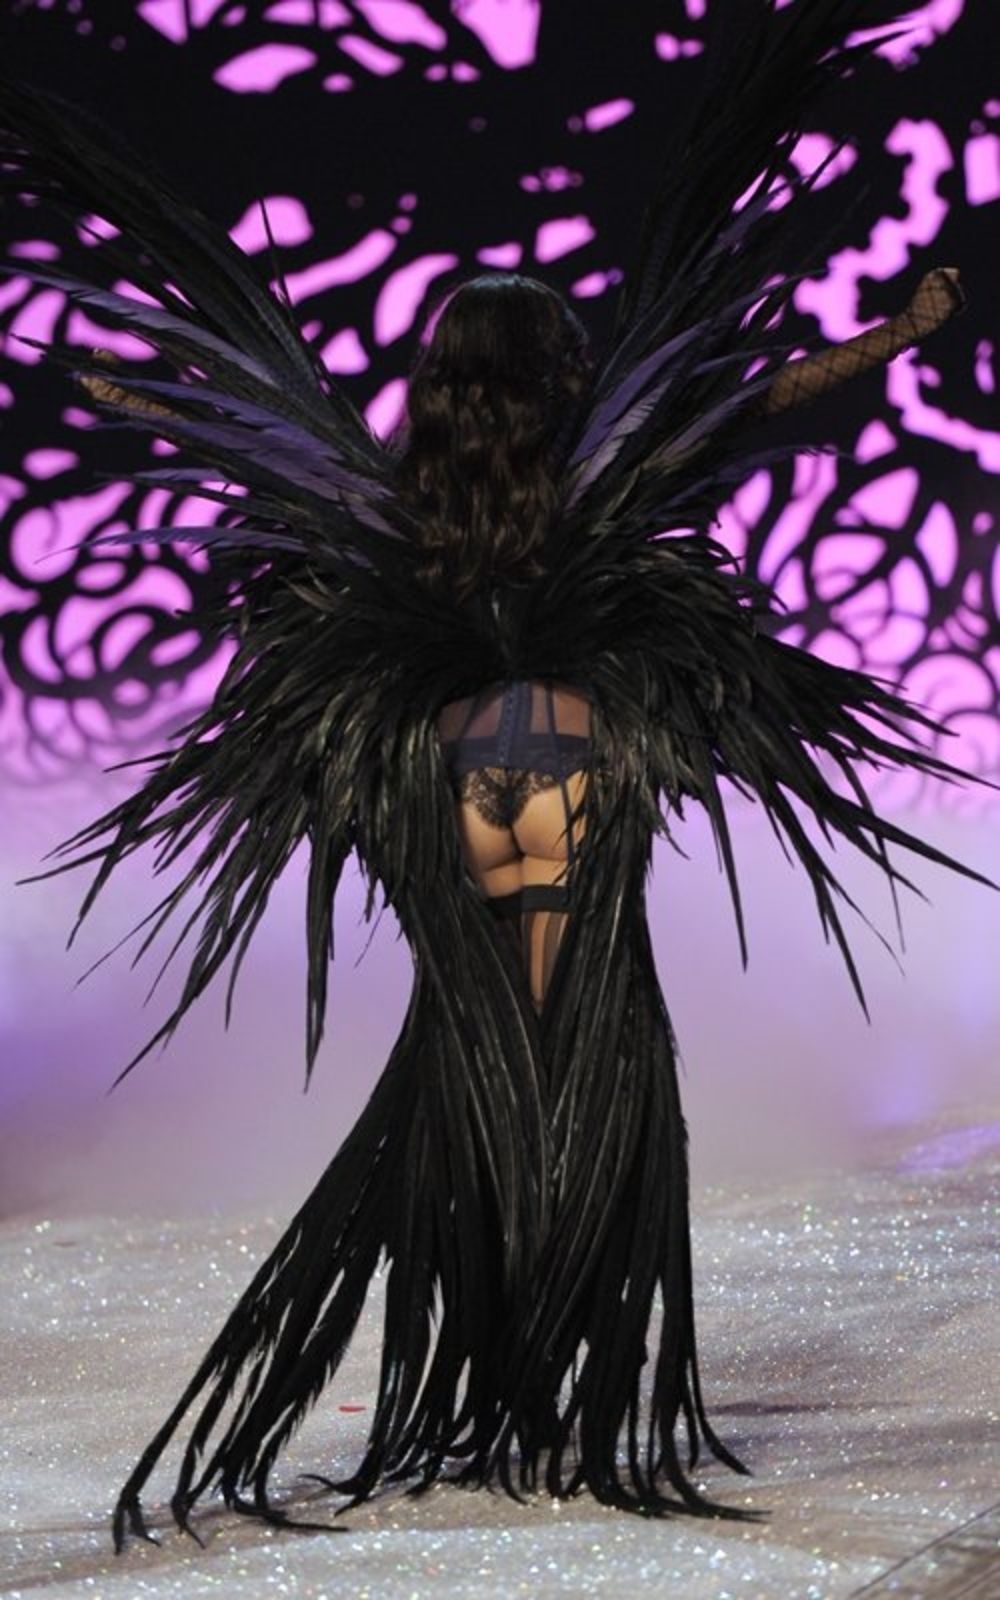 Brazilska lepotica Adrijana Lima nastupila je zajedno sa svojim anđeoskim koleginicama na glamuroznoj reviji kojom je promovisana nova linija ekskluzivnog donjeg veša brenda Victoria’s Secret. Nakon ceremonijalnog dela, zabava za tridesetogodišnju manekenku te